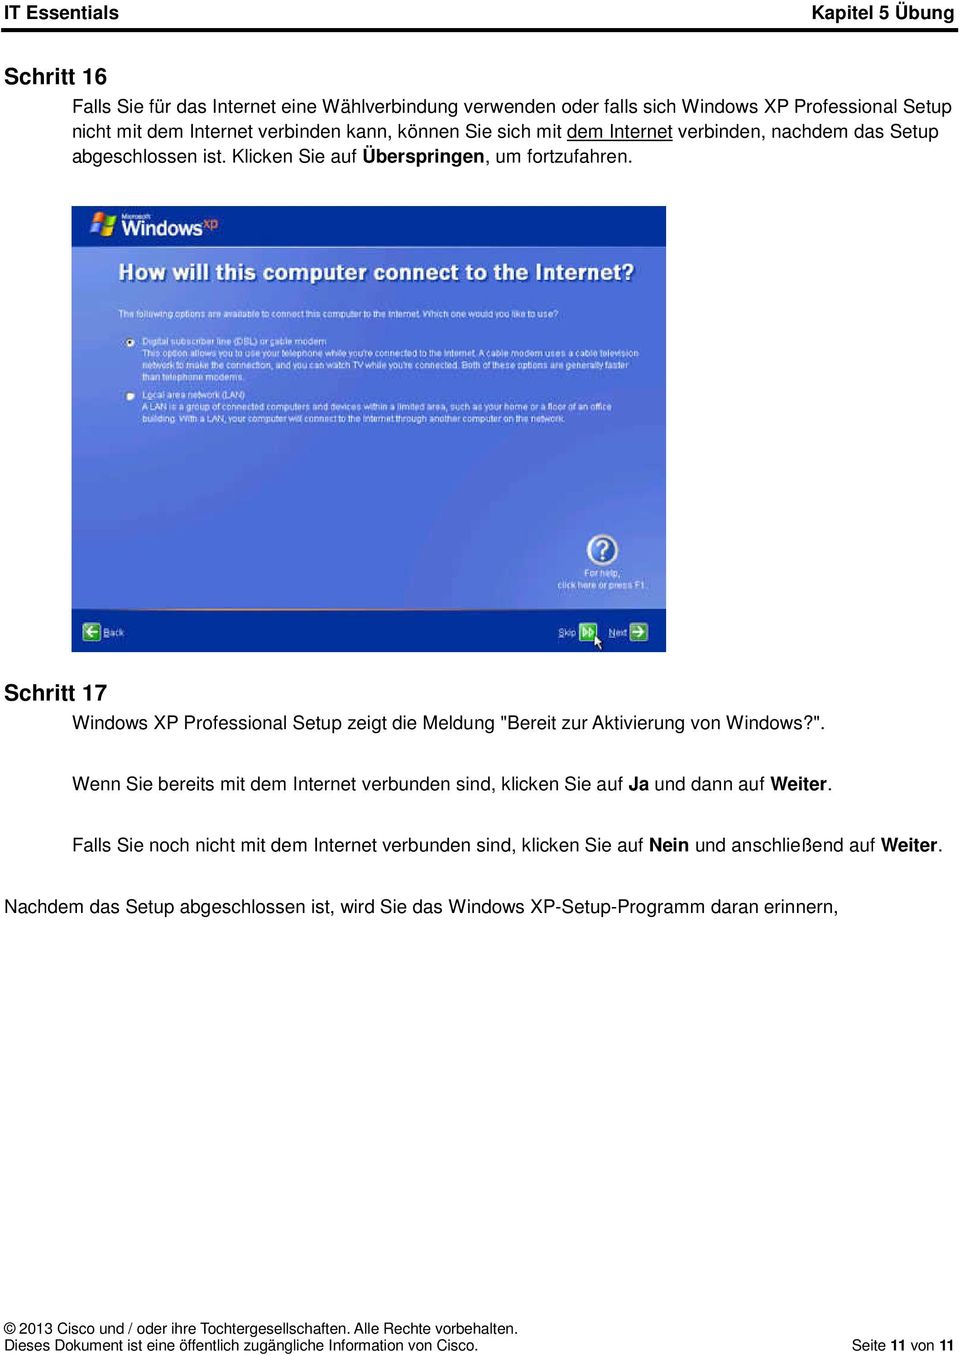 Schritt 17 Windows XP Professional Setup zeigt die Meldung "Bereit zur Aktivierung von Windows?". Wenn Sie bereits mit dem Internet verbunden sind, klicken Sie auf Ja und dann auf Weiter.